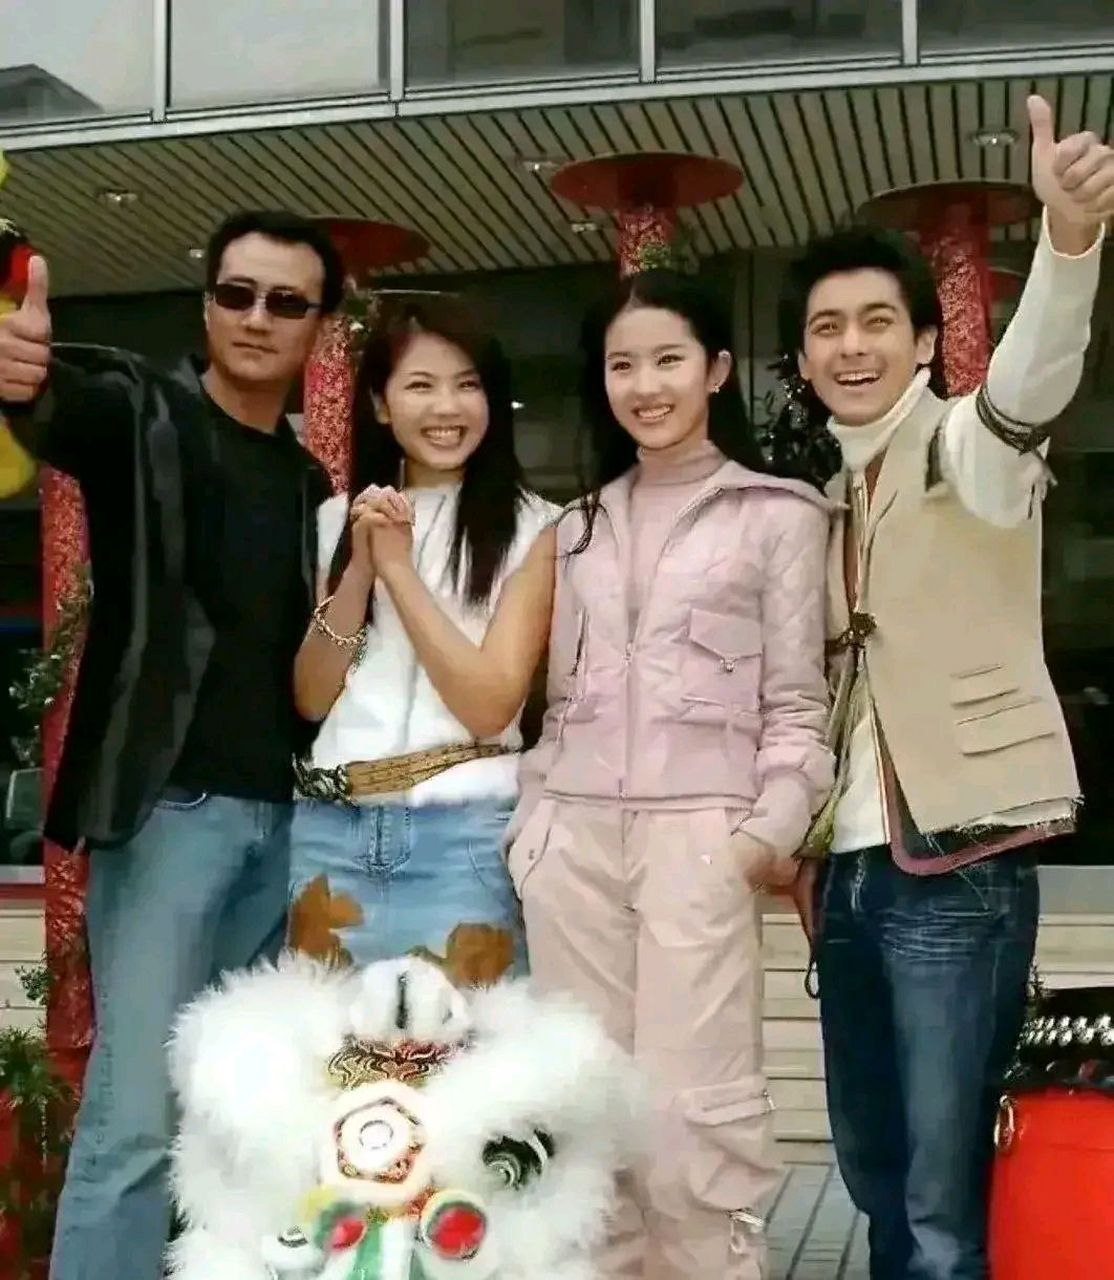 这张照片拍摄于2003年,林志颖,刘亦菲,刘涛,胡军同框参加活动,四个人